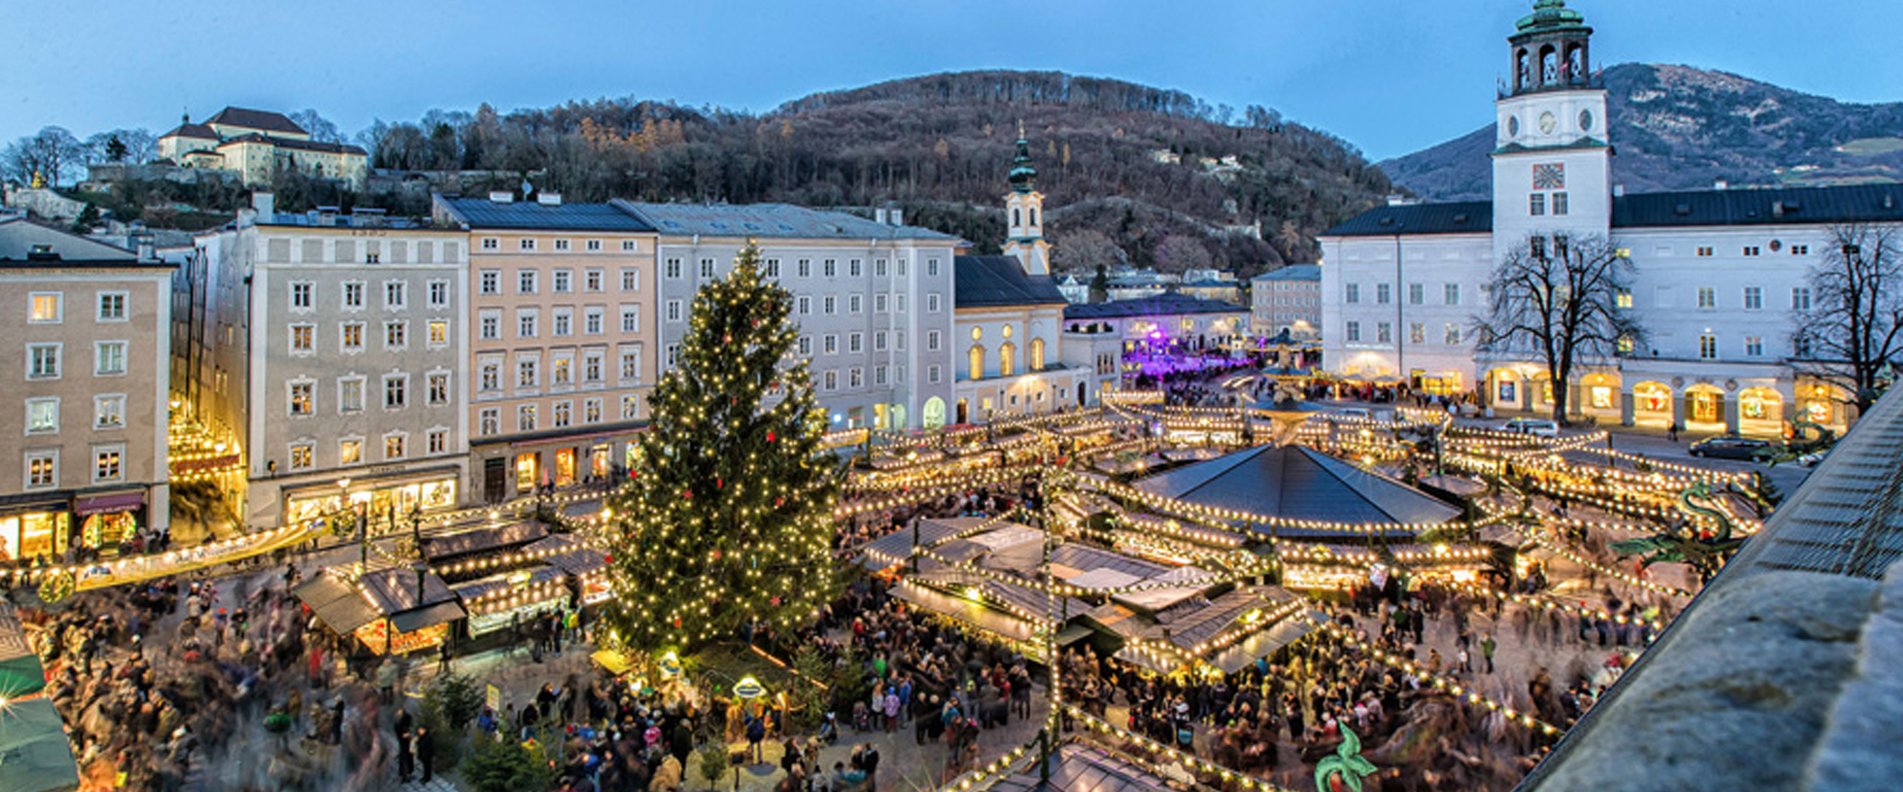 ©  www.christkindlmarkt.co.at, Salzburg